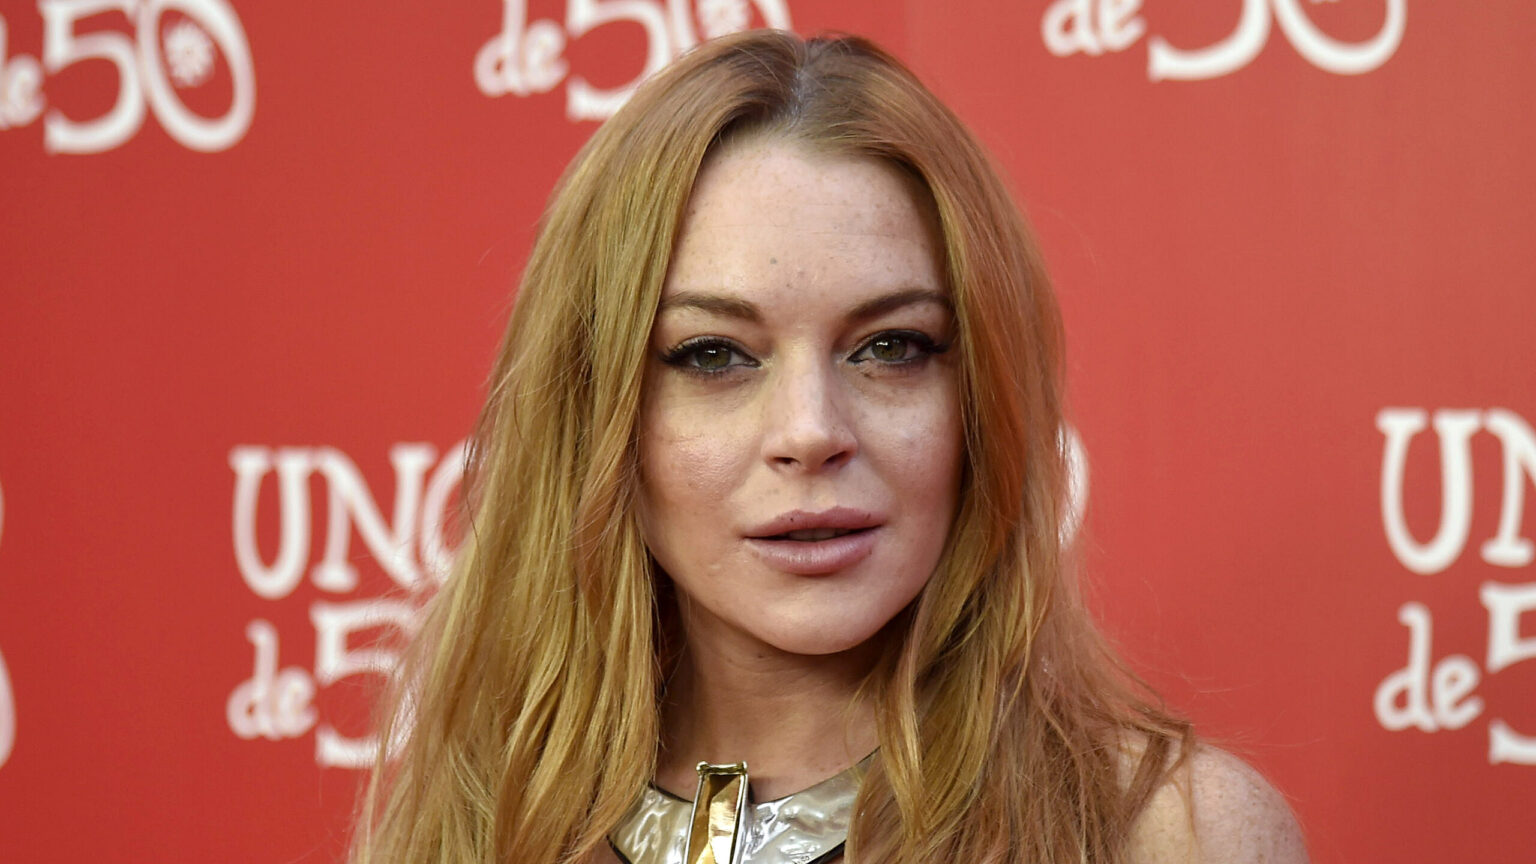 Lindsay Lohan, de estrella juvenil a madre: anuncia su embarazo junto a Shammas